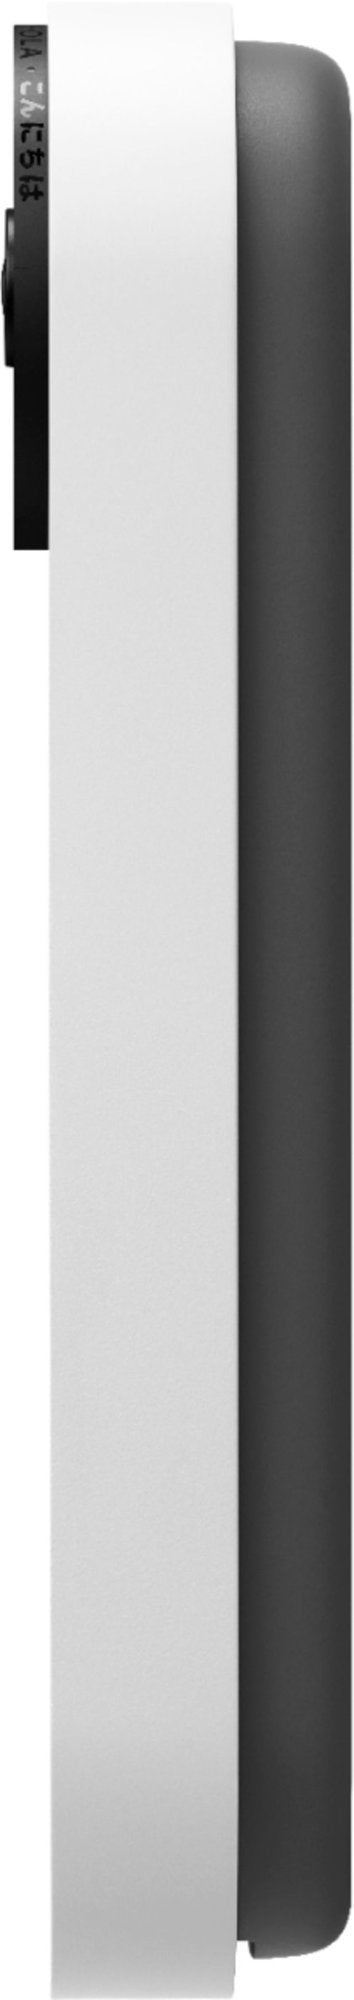 Google Nest Doorbell (Battery) Wireless Doorbell Camera - Video Doorbell - Linen (Refurbished)